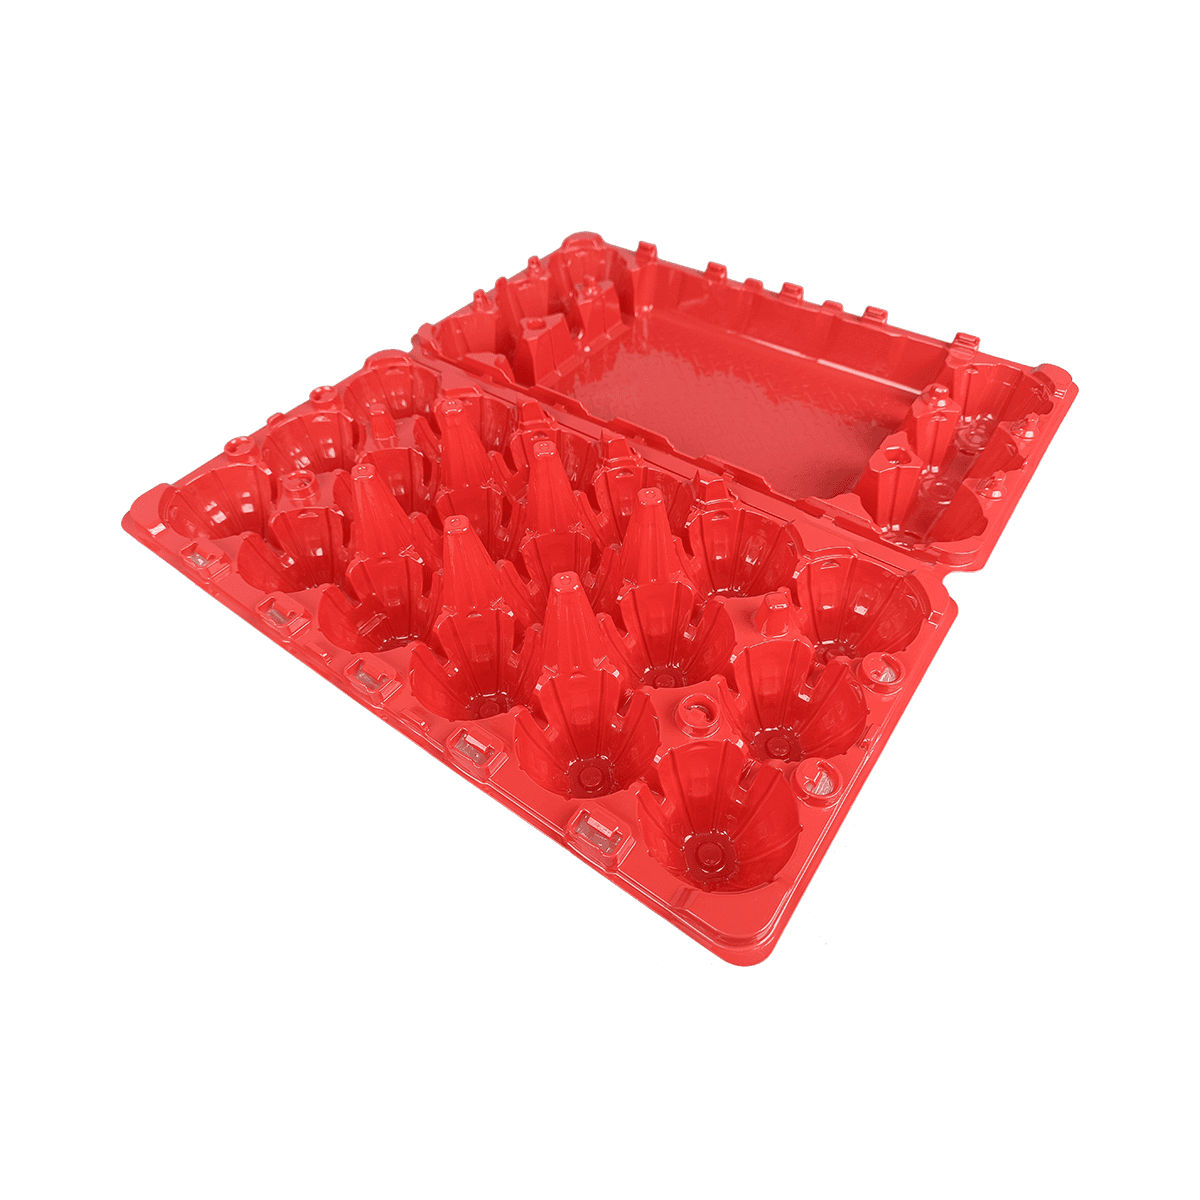 Cartones de huevos rojos mate disponibles del ANIMAL DOMÉSTICO 18 convenientes para el almacenamiento en la granja de huevos frescos